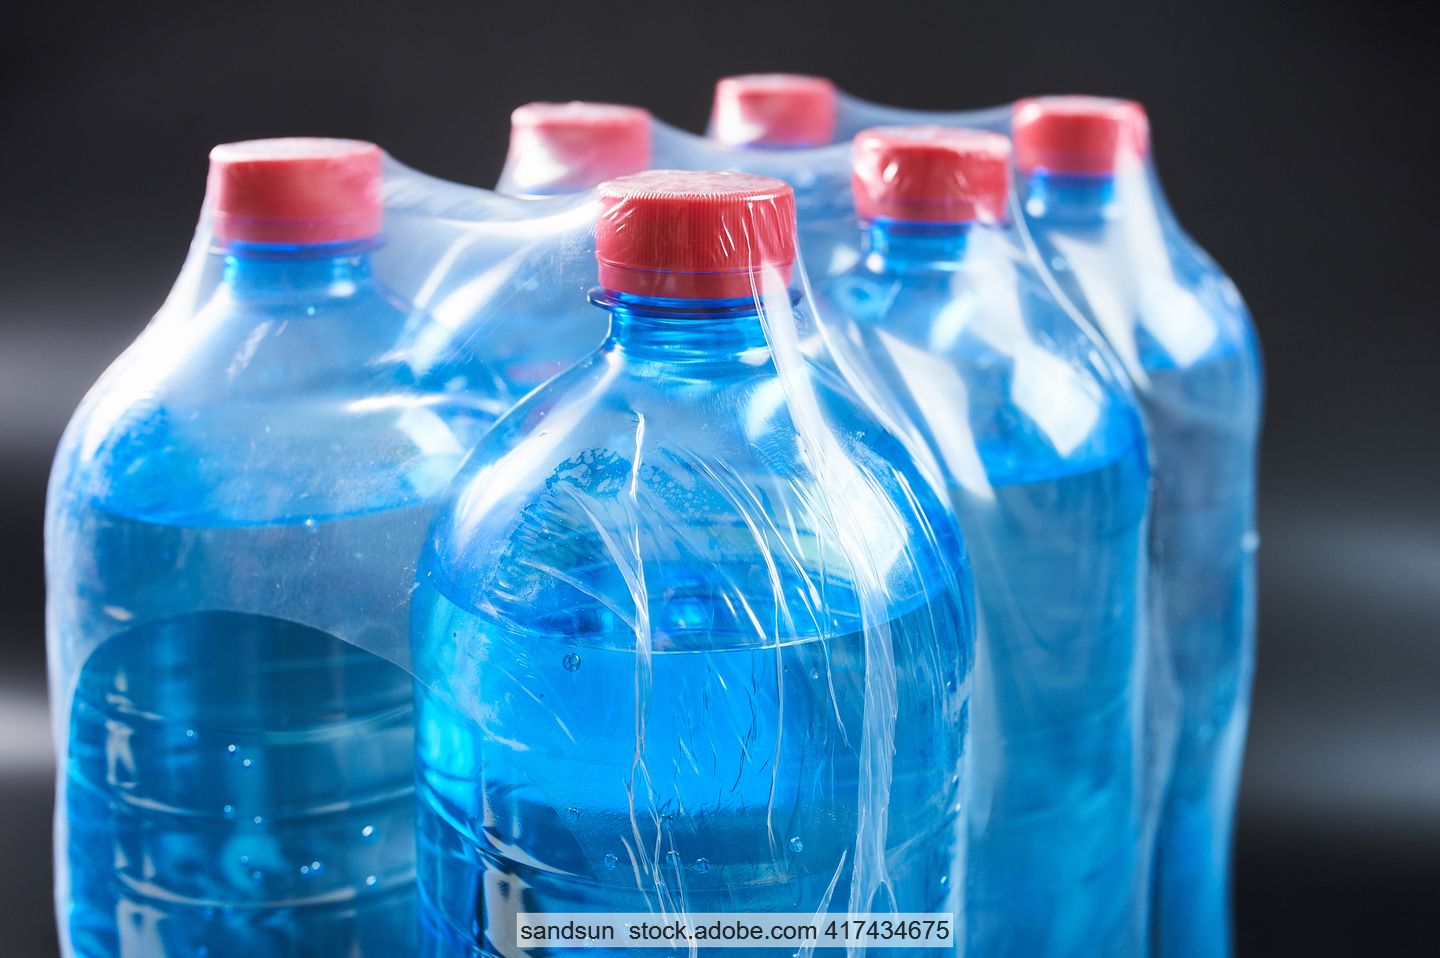 Mit Wasser gefüllte Einwegflaschen aus PET, mit Schrumpffolie zu einem Sechserpack verpackt.in 